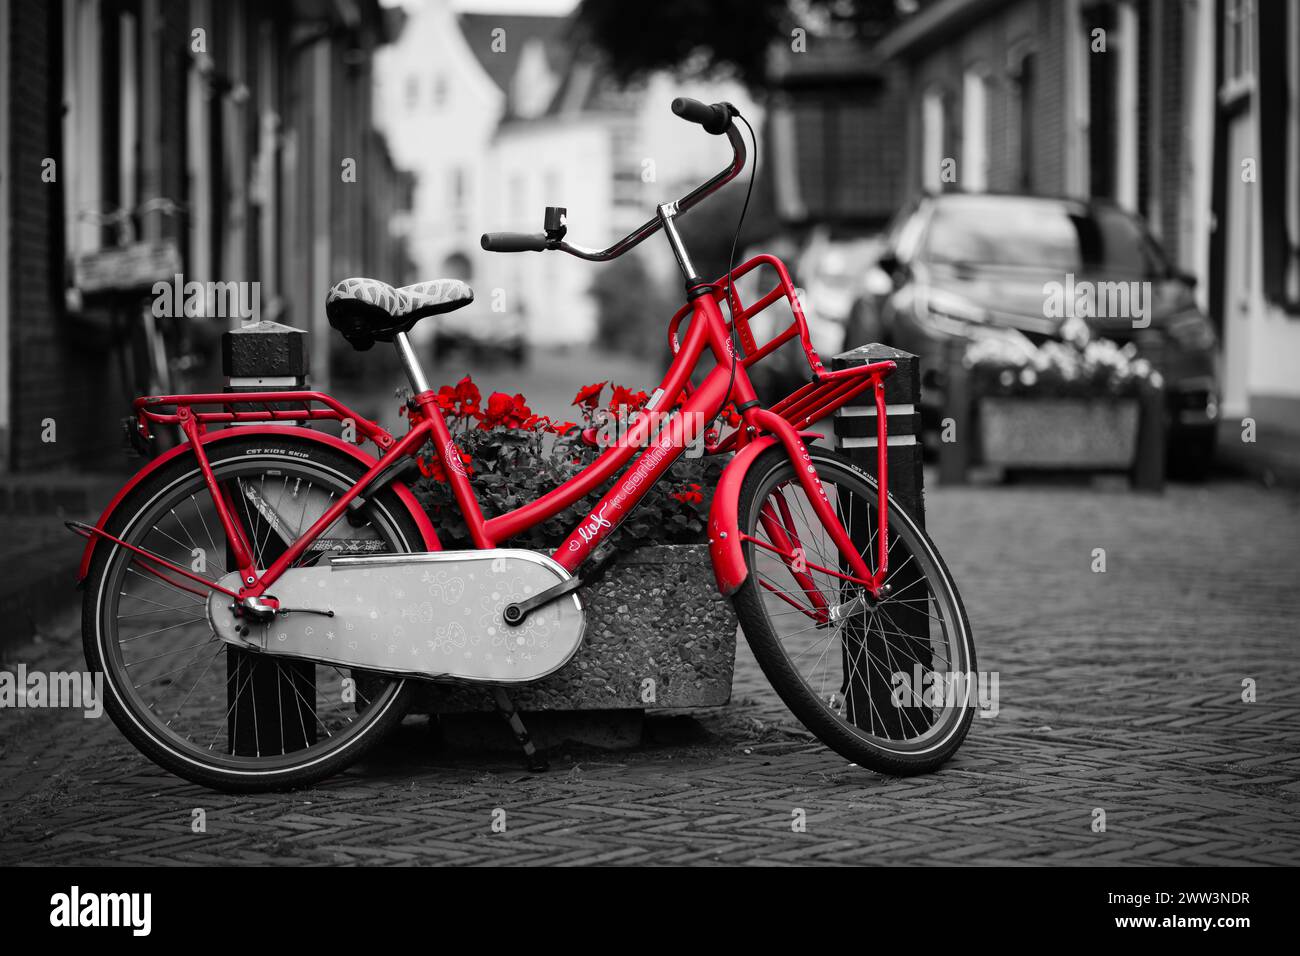 Photographie couleur sélective d'un vélo rouge avec un panier de fleurs sur une vieille rue pavée Banque D'Images